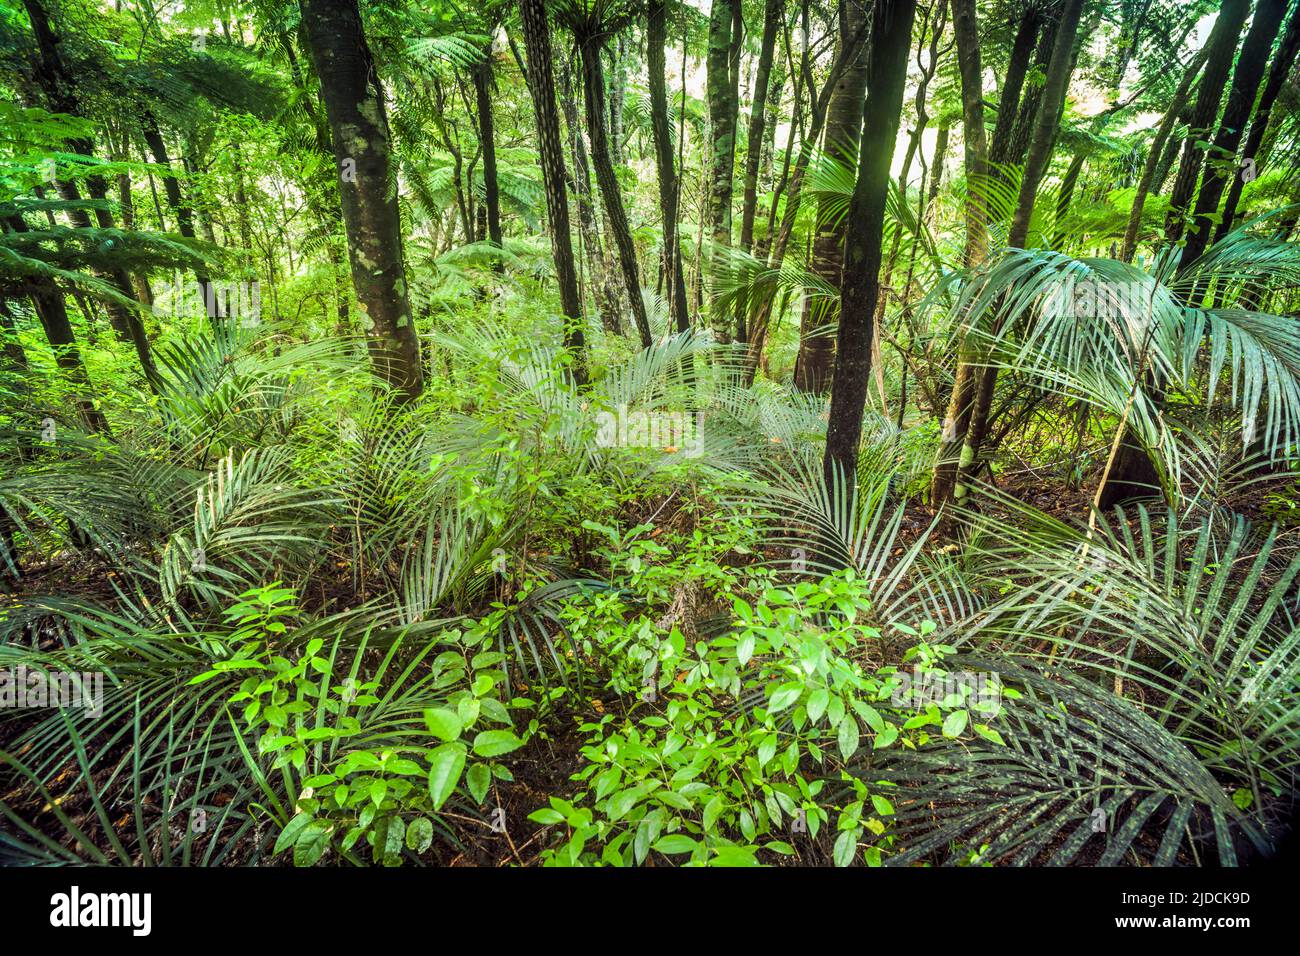 Cespuglio nativo della Nuova Zelanda, felci di alberi e palme. Piha, Nuova Zelanda, accreditamento:Robin Bush / Avalon Foto Stock